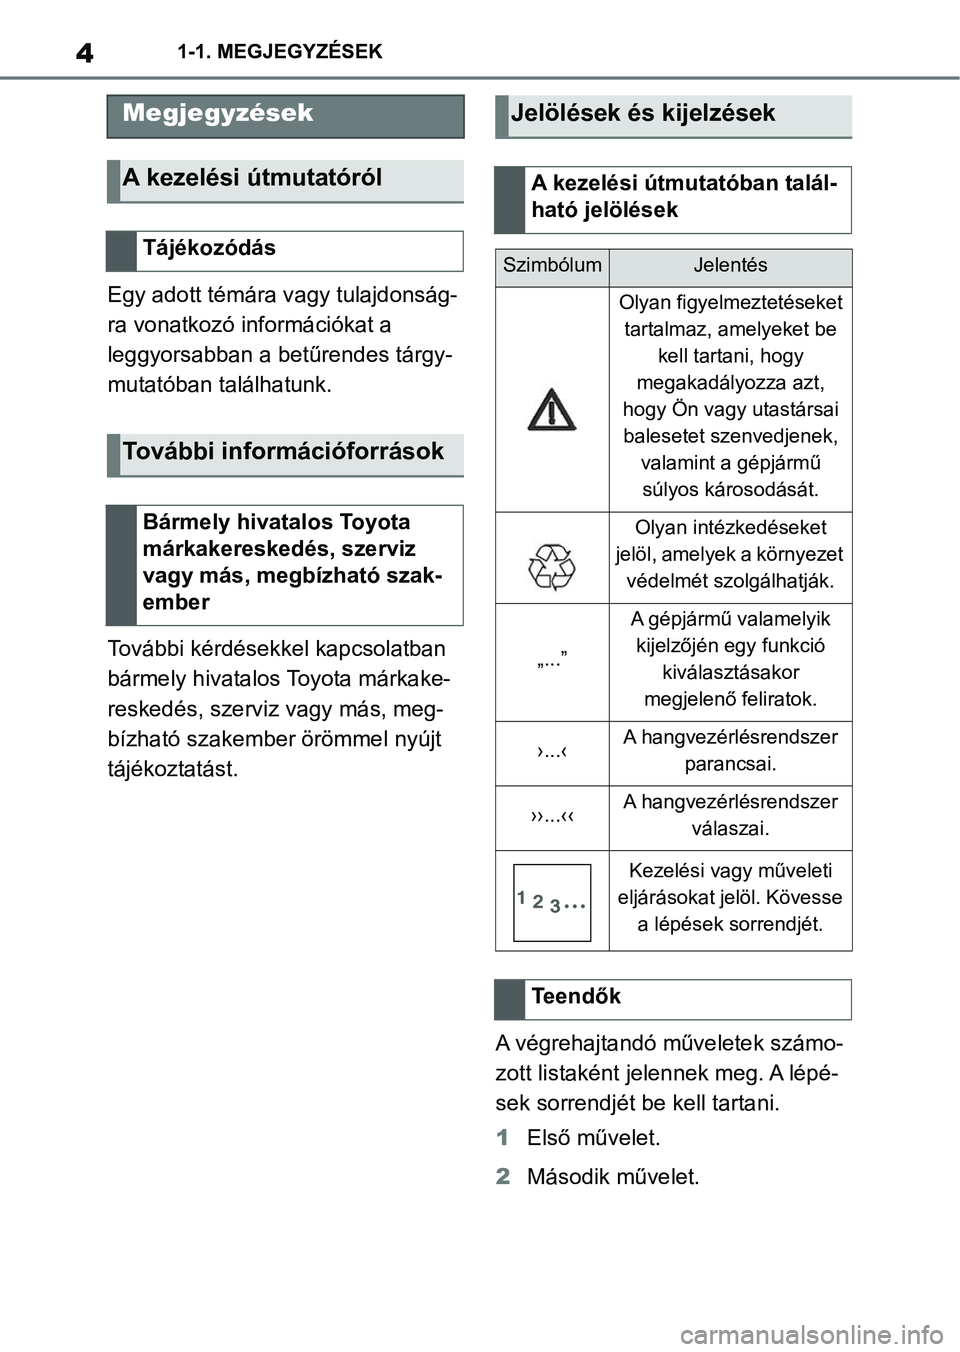 TOYOTA SUPRA 2020  Kezelési útmutató (in Hungarian) 41-1. MEGJEGYZÉSEK
1-1.MEGJEGYZÉSEK
Egy adott témára vagy tulajdonság-
ra vonatkozó információkat a 
leggyorsabban a betűrendes tárgy-
mutatóban találhatunk.
További kérdésekkel kapcsol